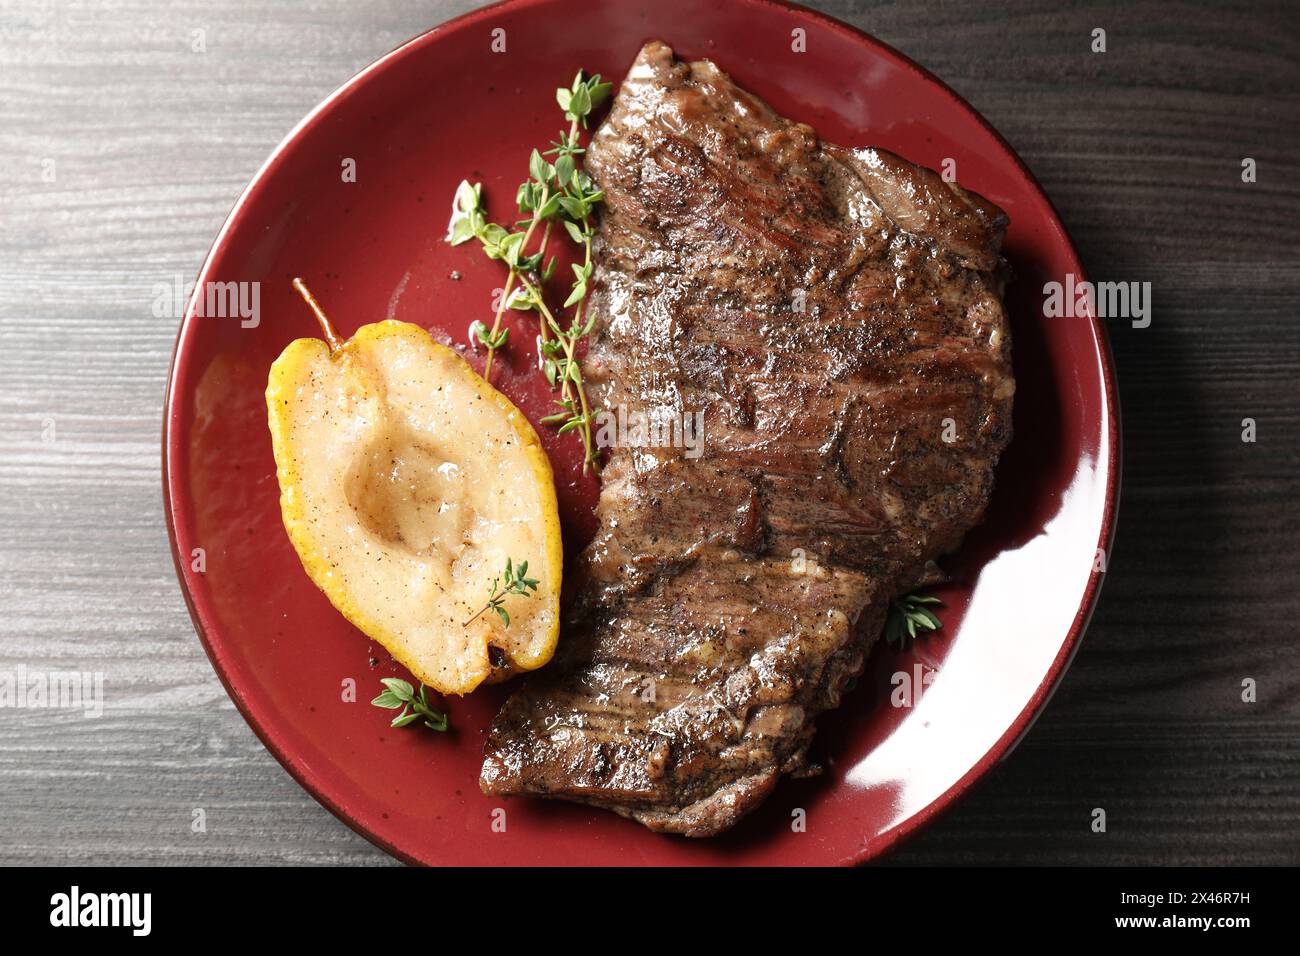 Délicieuse viande de bœuf rôtie, poire caramélisée et thym sur table en bois gris, vue de dessus Banque D'Images